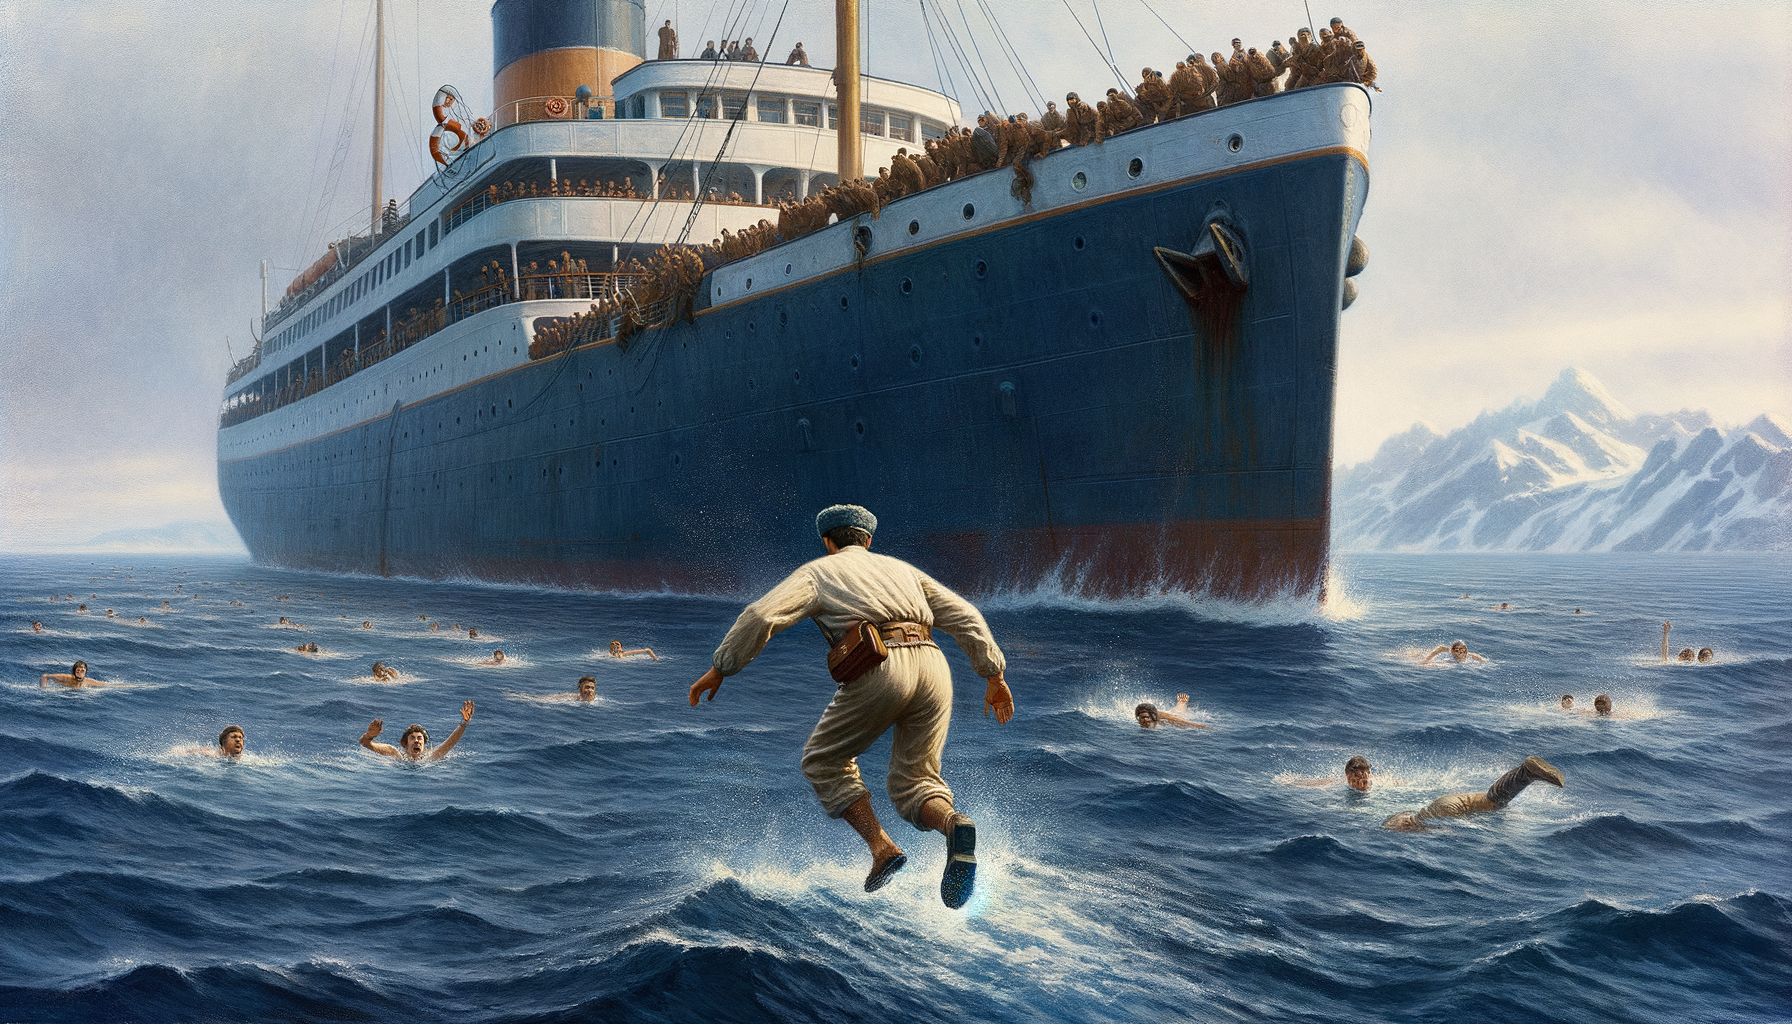 океанограф из СССР спрыгнул без обуви в легкой одежде с экскурсионного корабля в океан никто не видел этого и поплыл к берегу